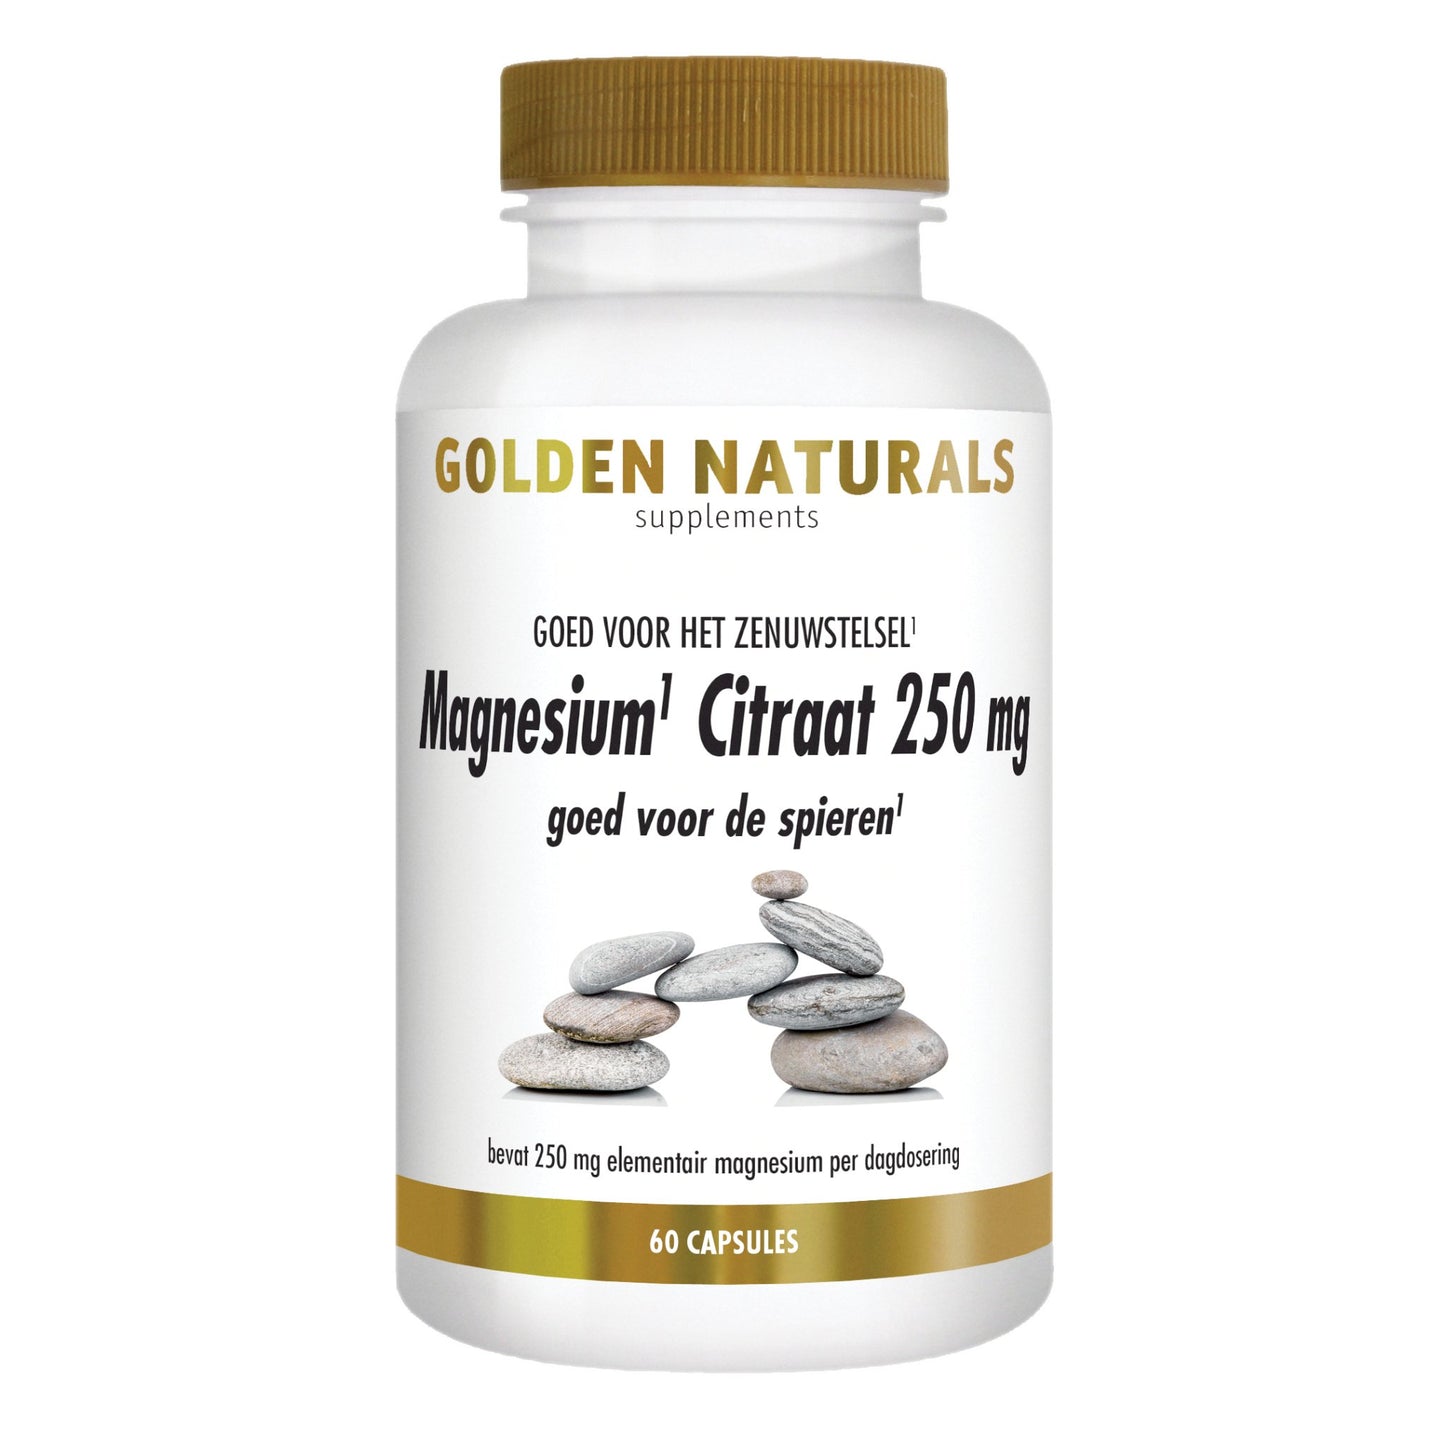 Magnesium Citraat 250 mg - 60 - veganistische capsules Supplement Golden Naturals   